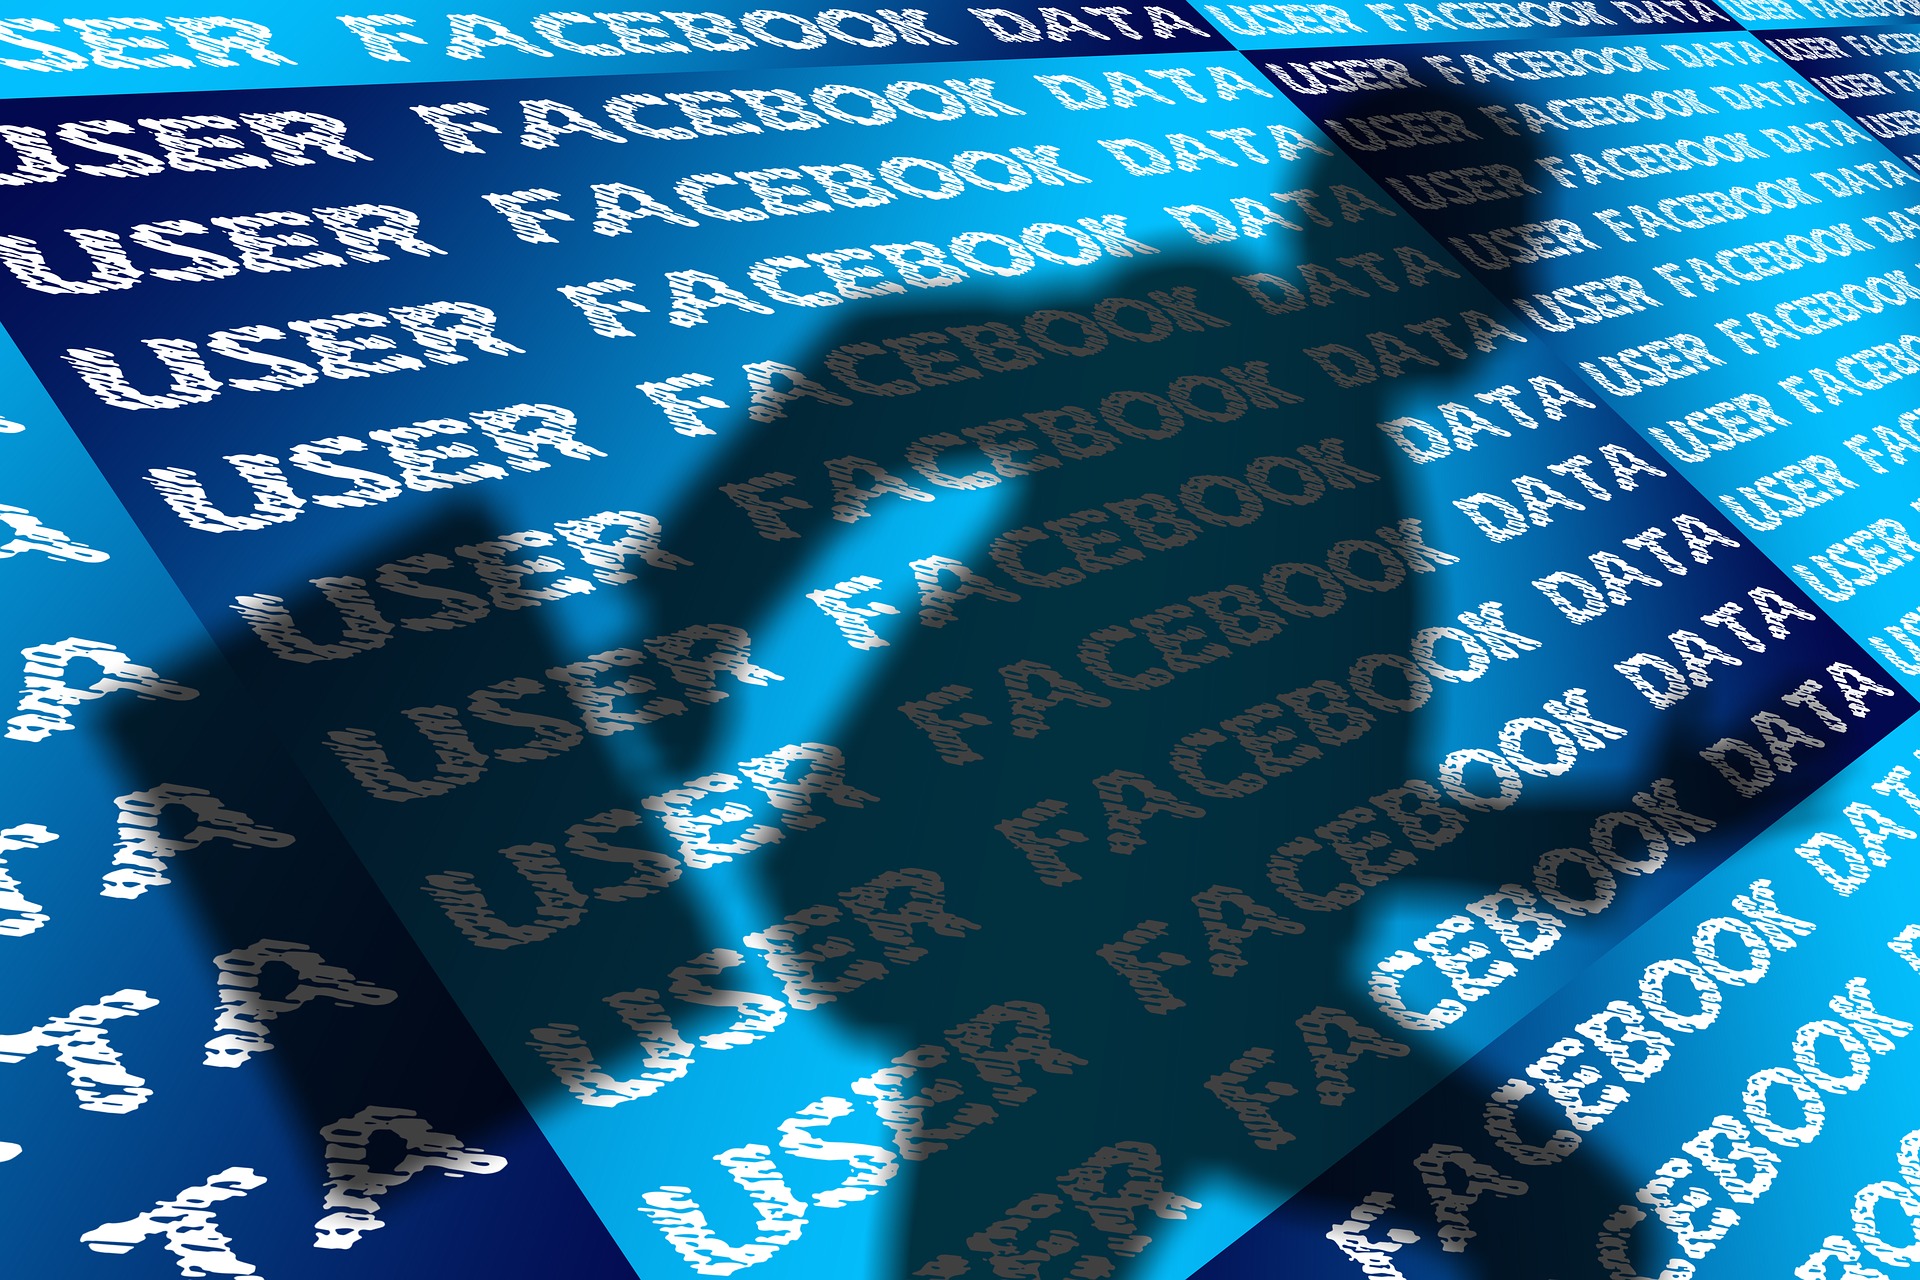 420 Millionen Telefonnummern von Facebook-Nutzern geleakt